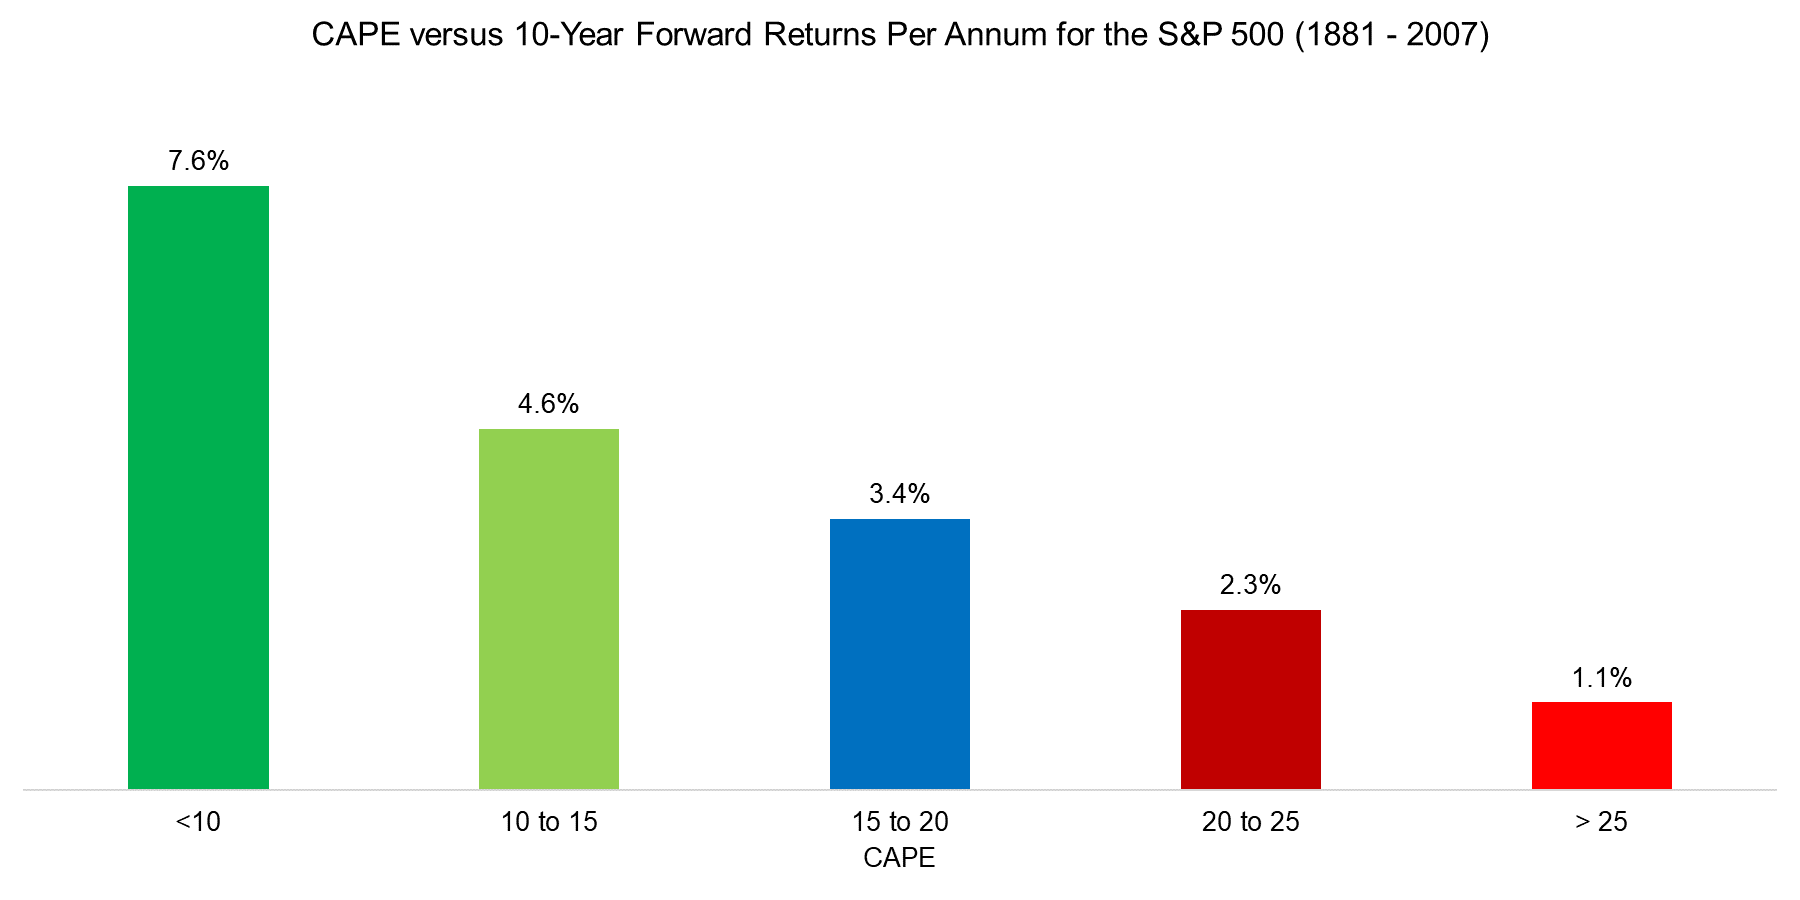 CAPE versus 10-Year Forward Returns Per Annum for the S&P 500 (1872 - 2007)